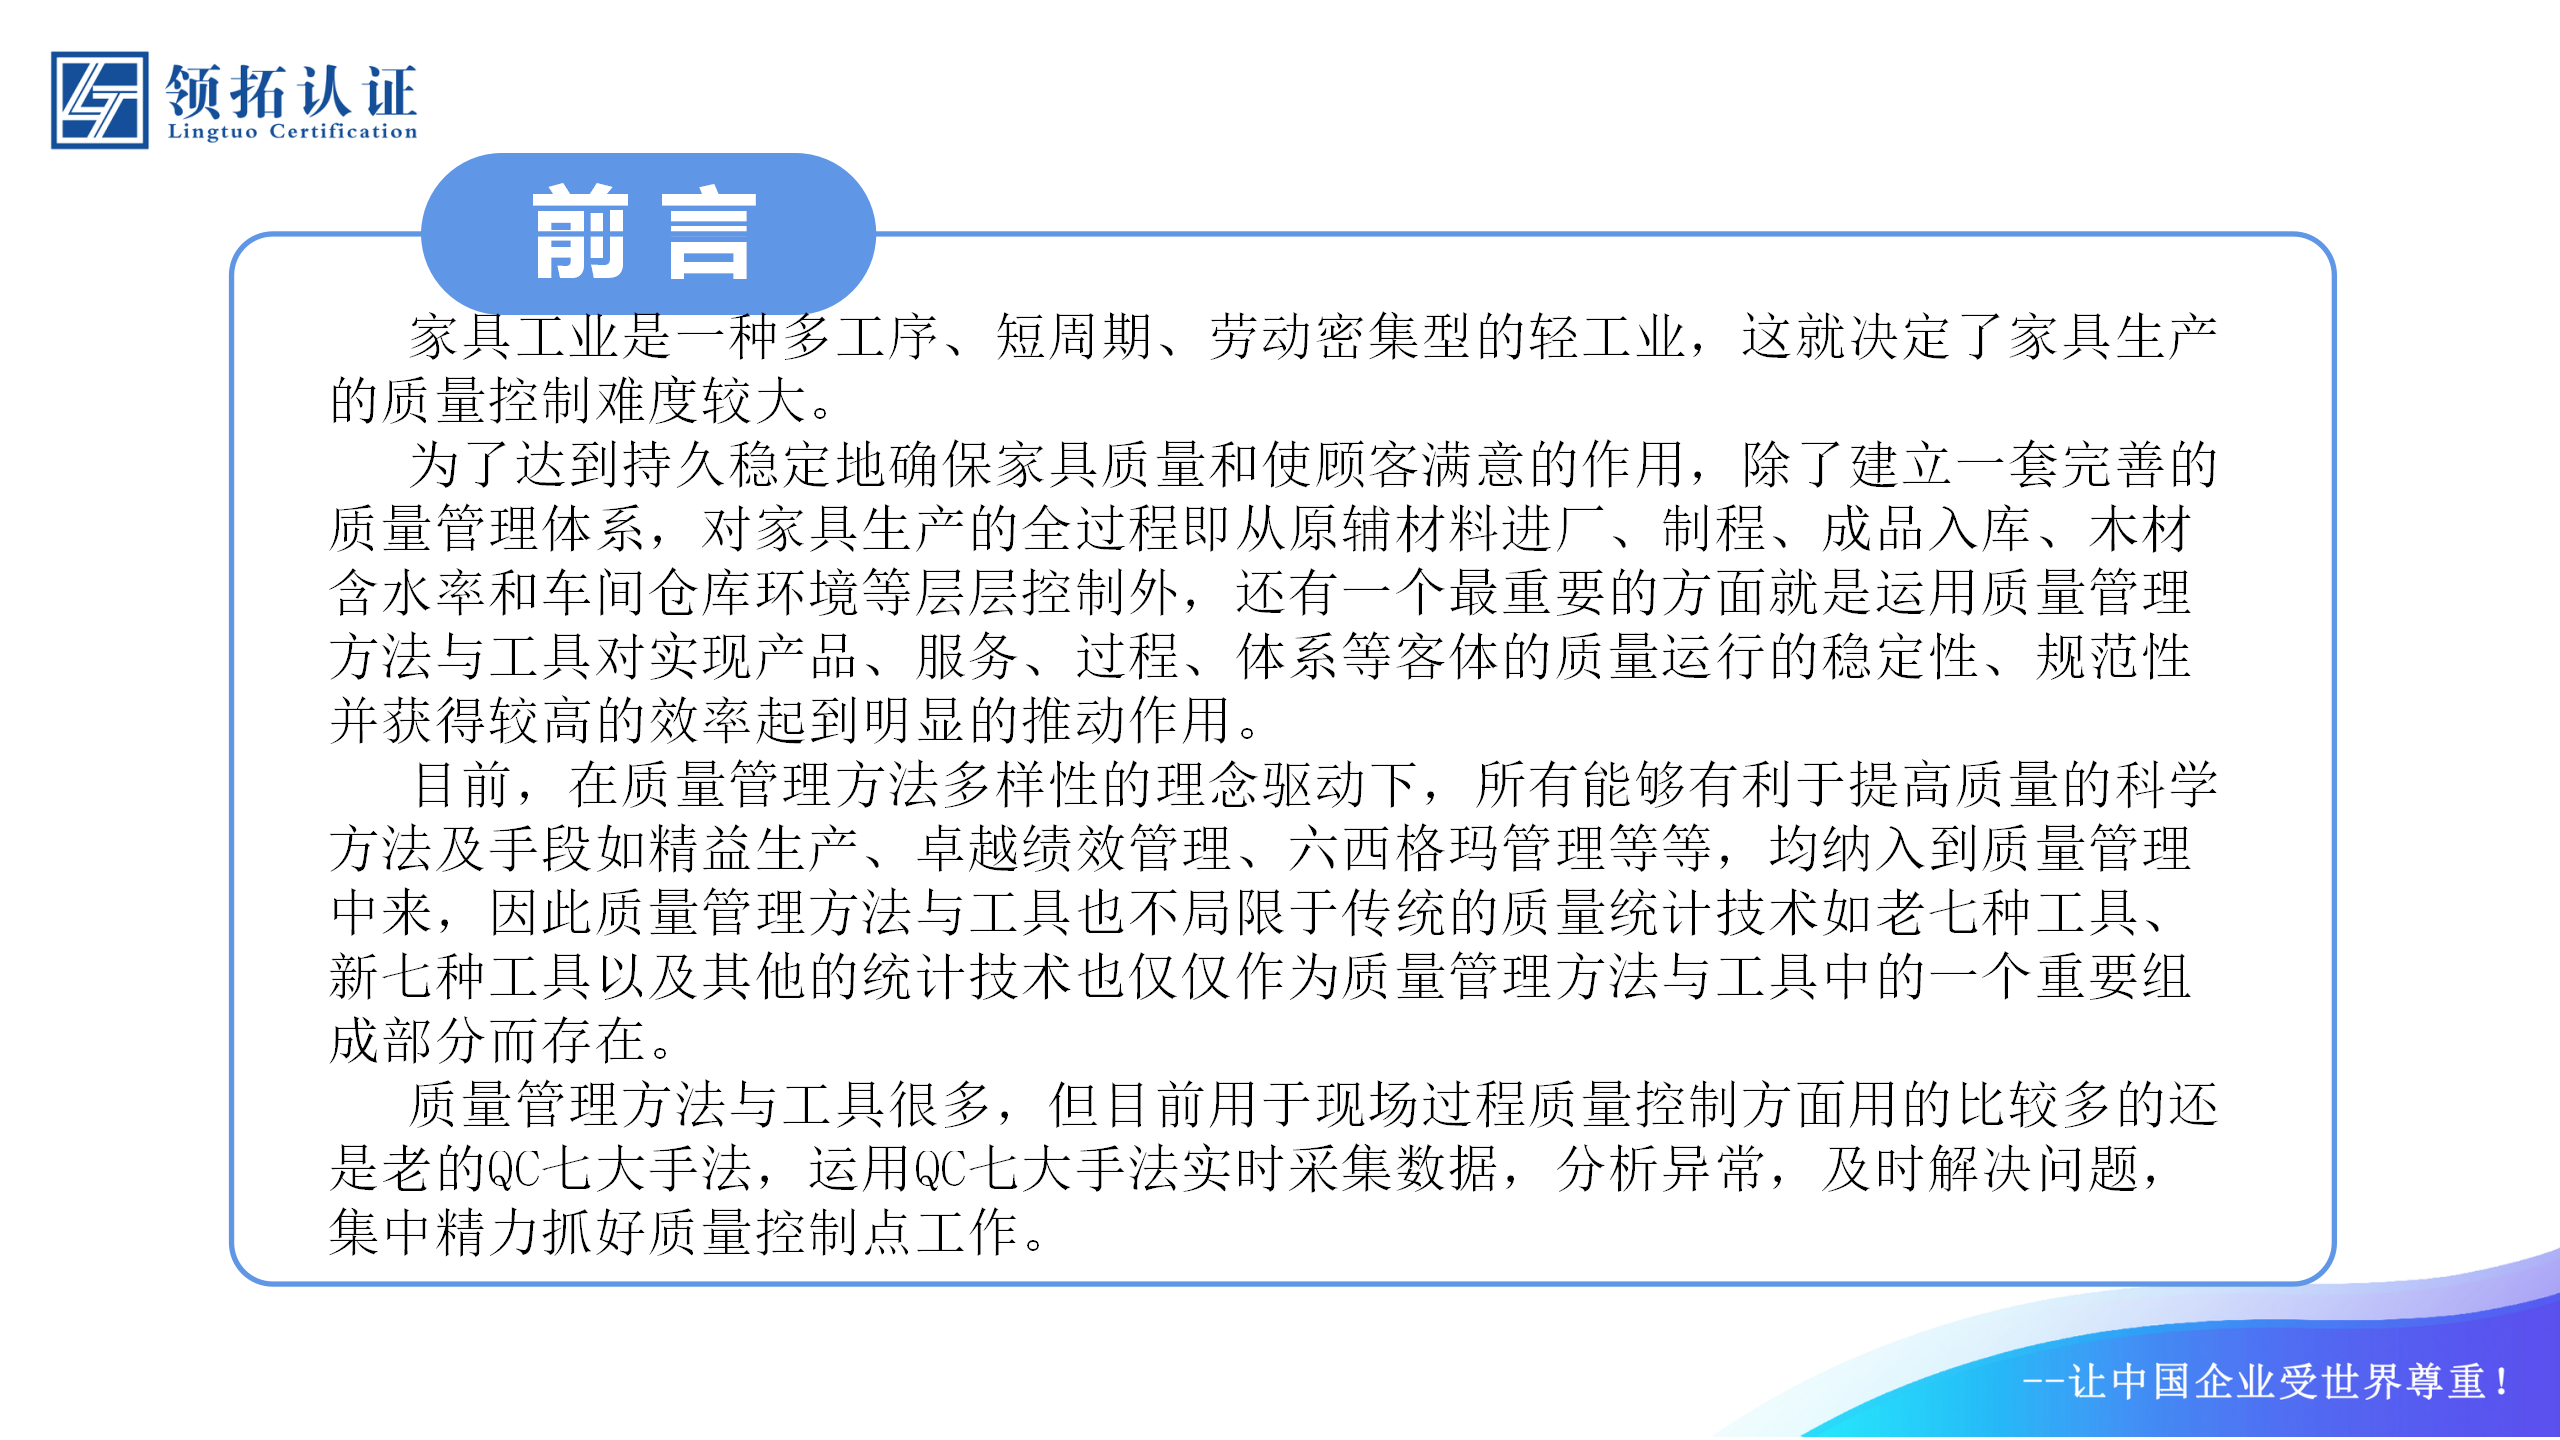 【标准+认证】 领拓认证助力襄汾县晋作古典家具专业镇高质量发展